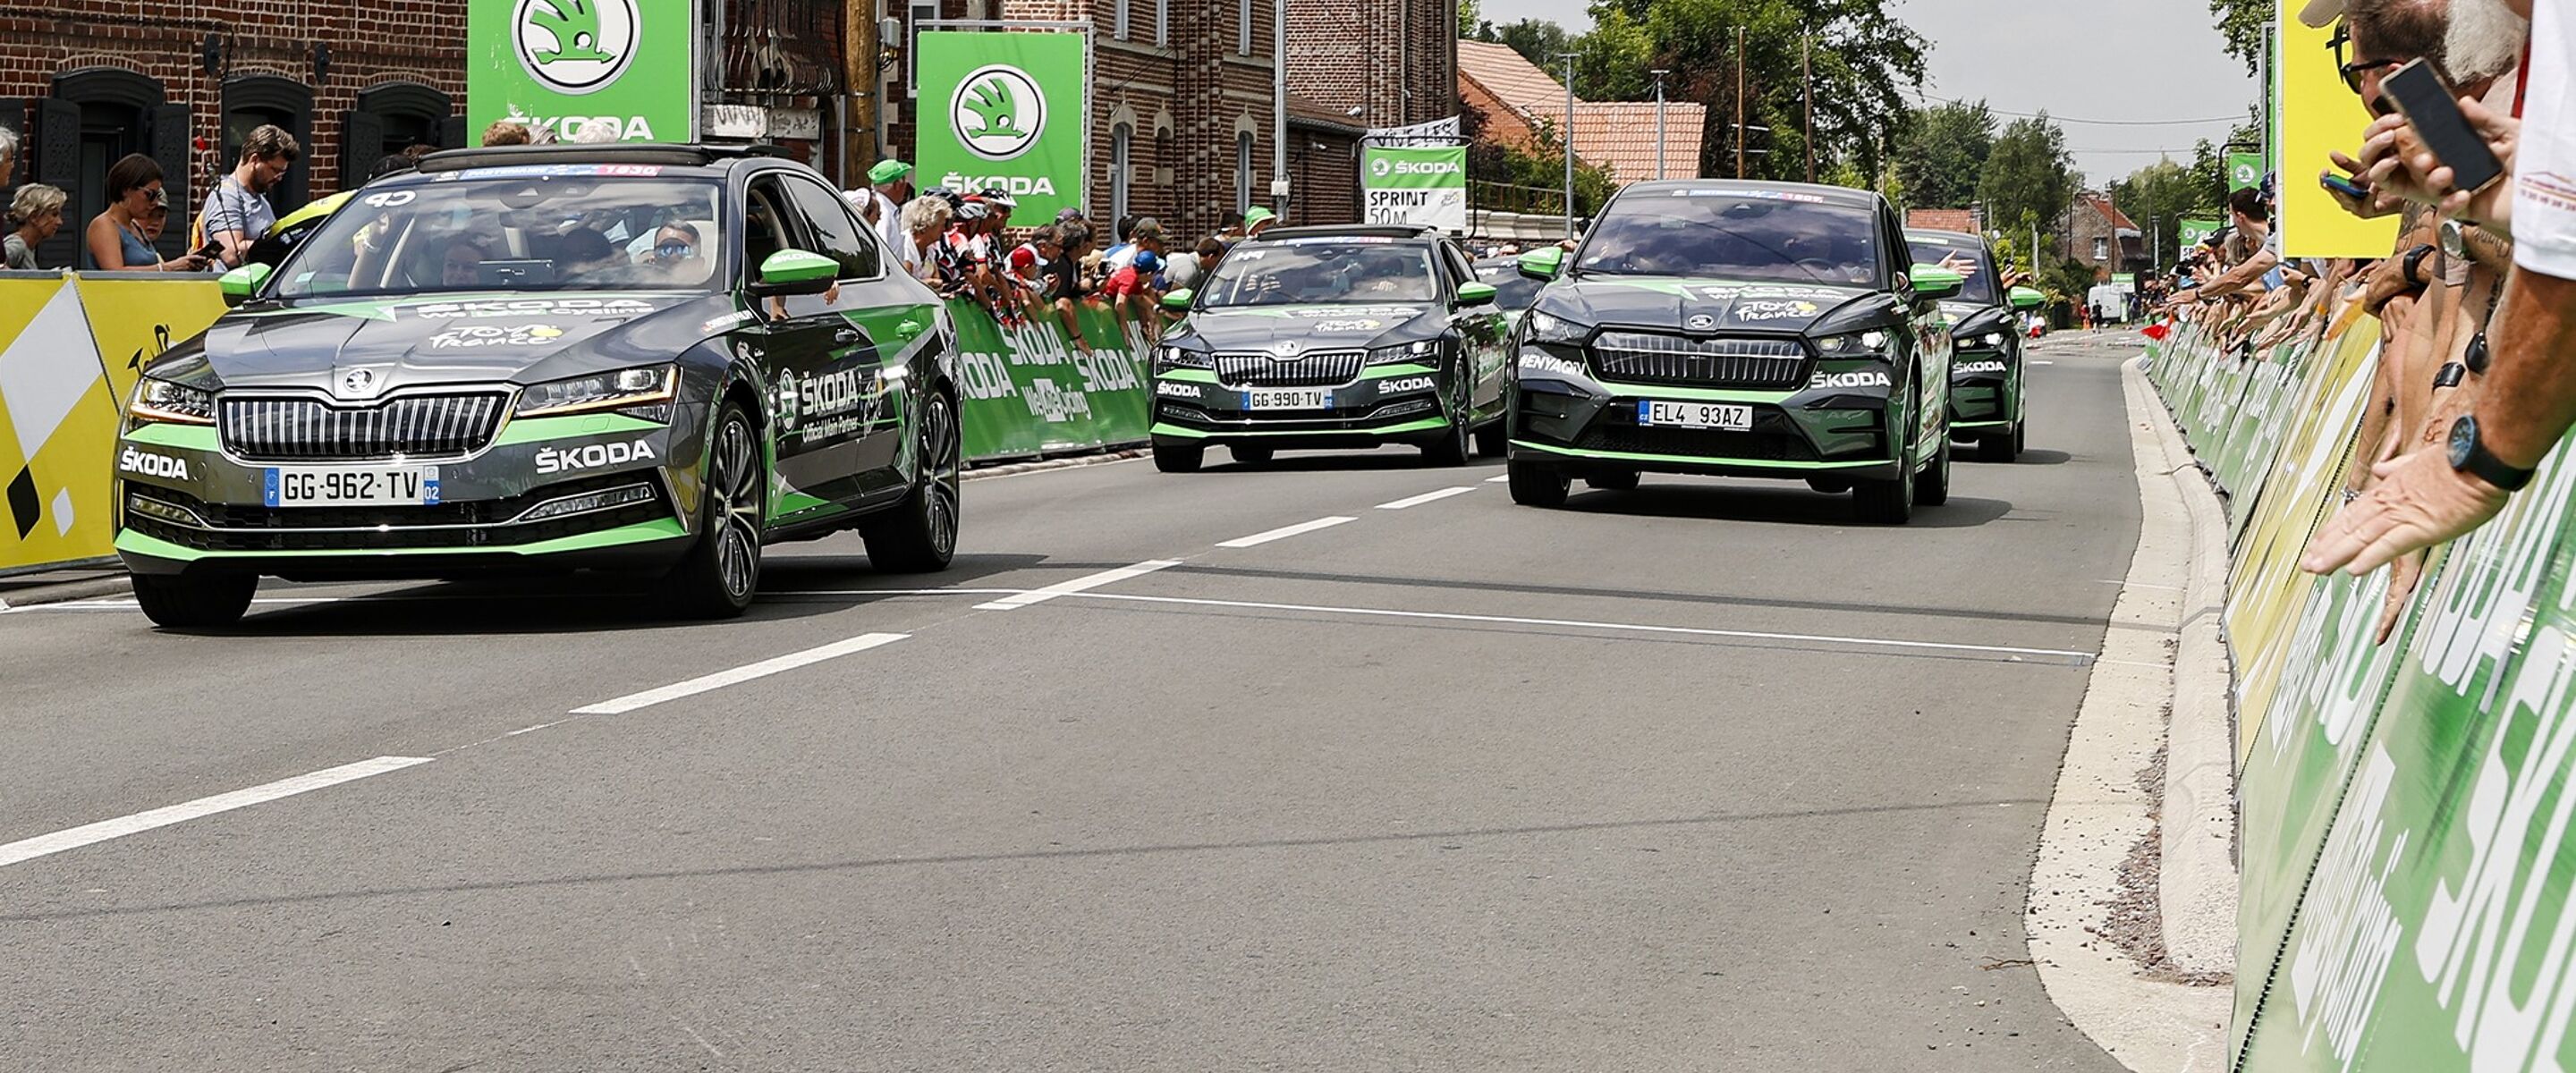 Tour de France: wie bestuurt de Škoda’s op het parcours?